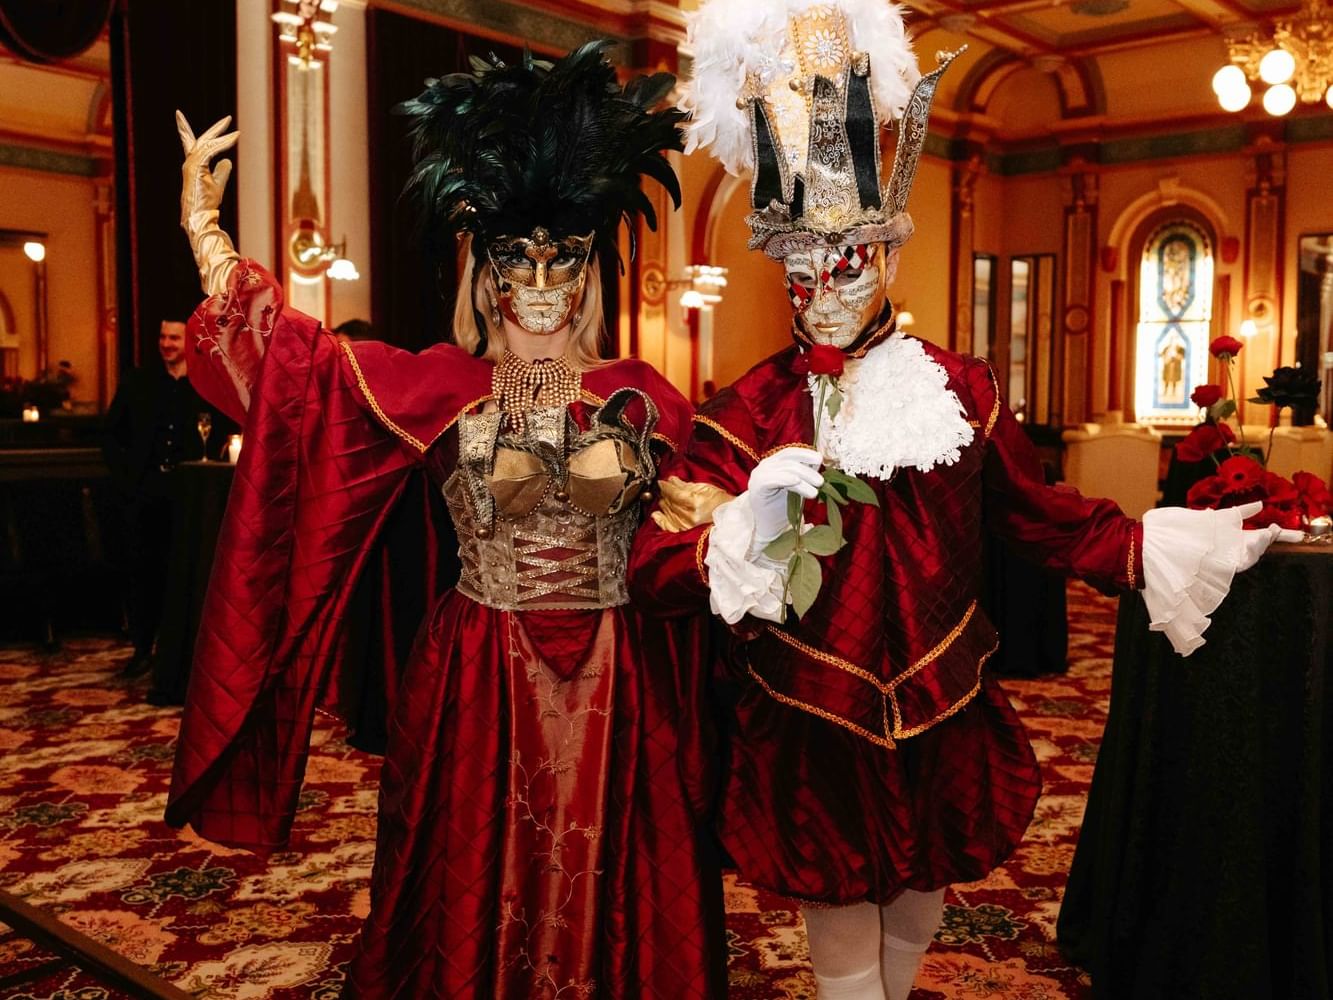 Masquerade Ball - The Grand Ballroom